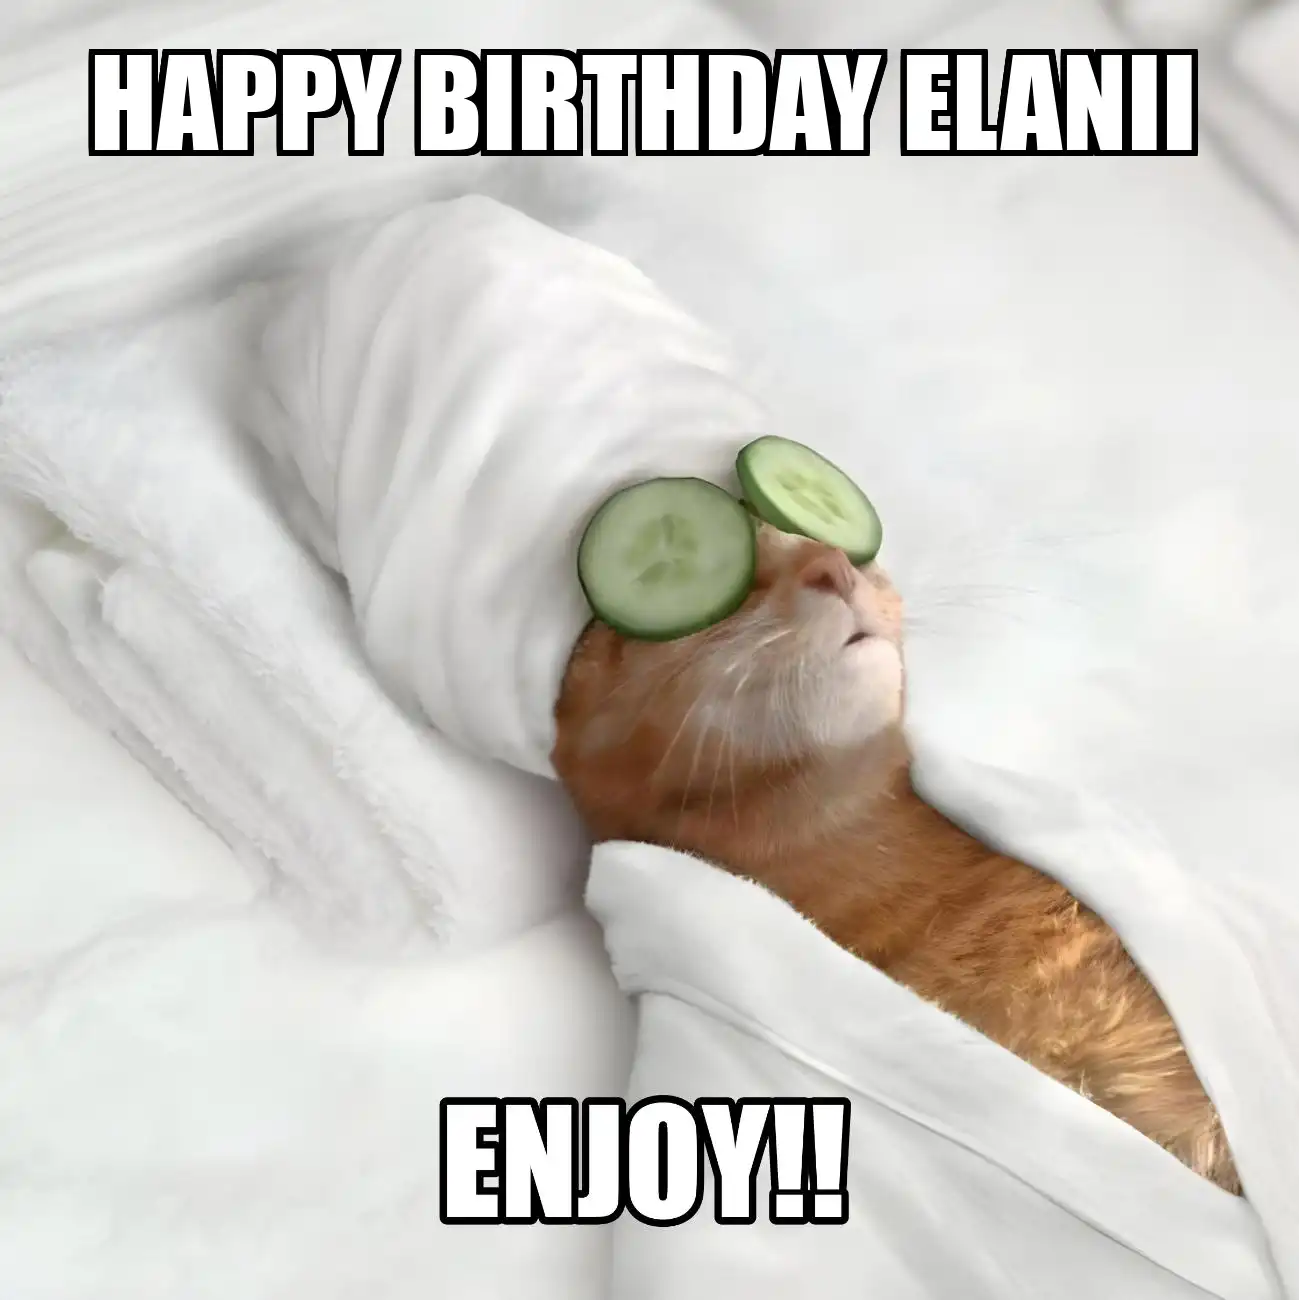 Happy Birthday Elanii Enjoy Cat Meme